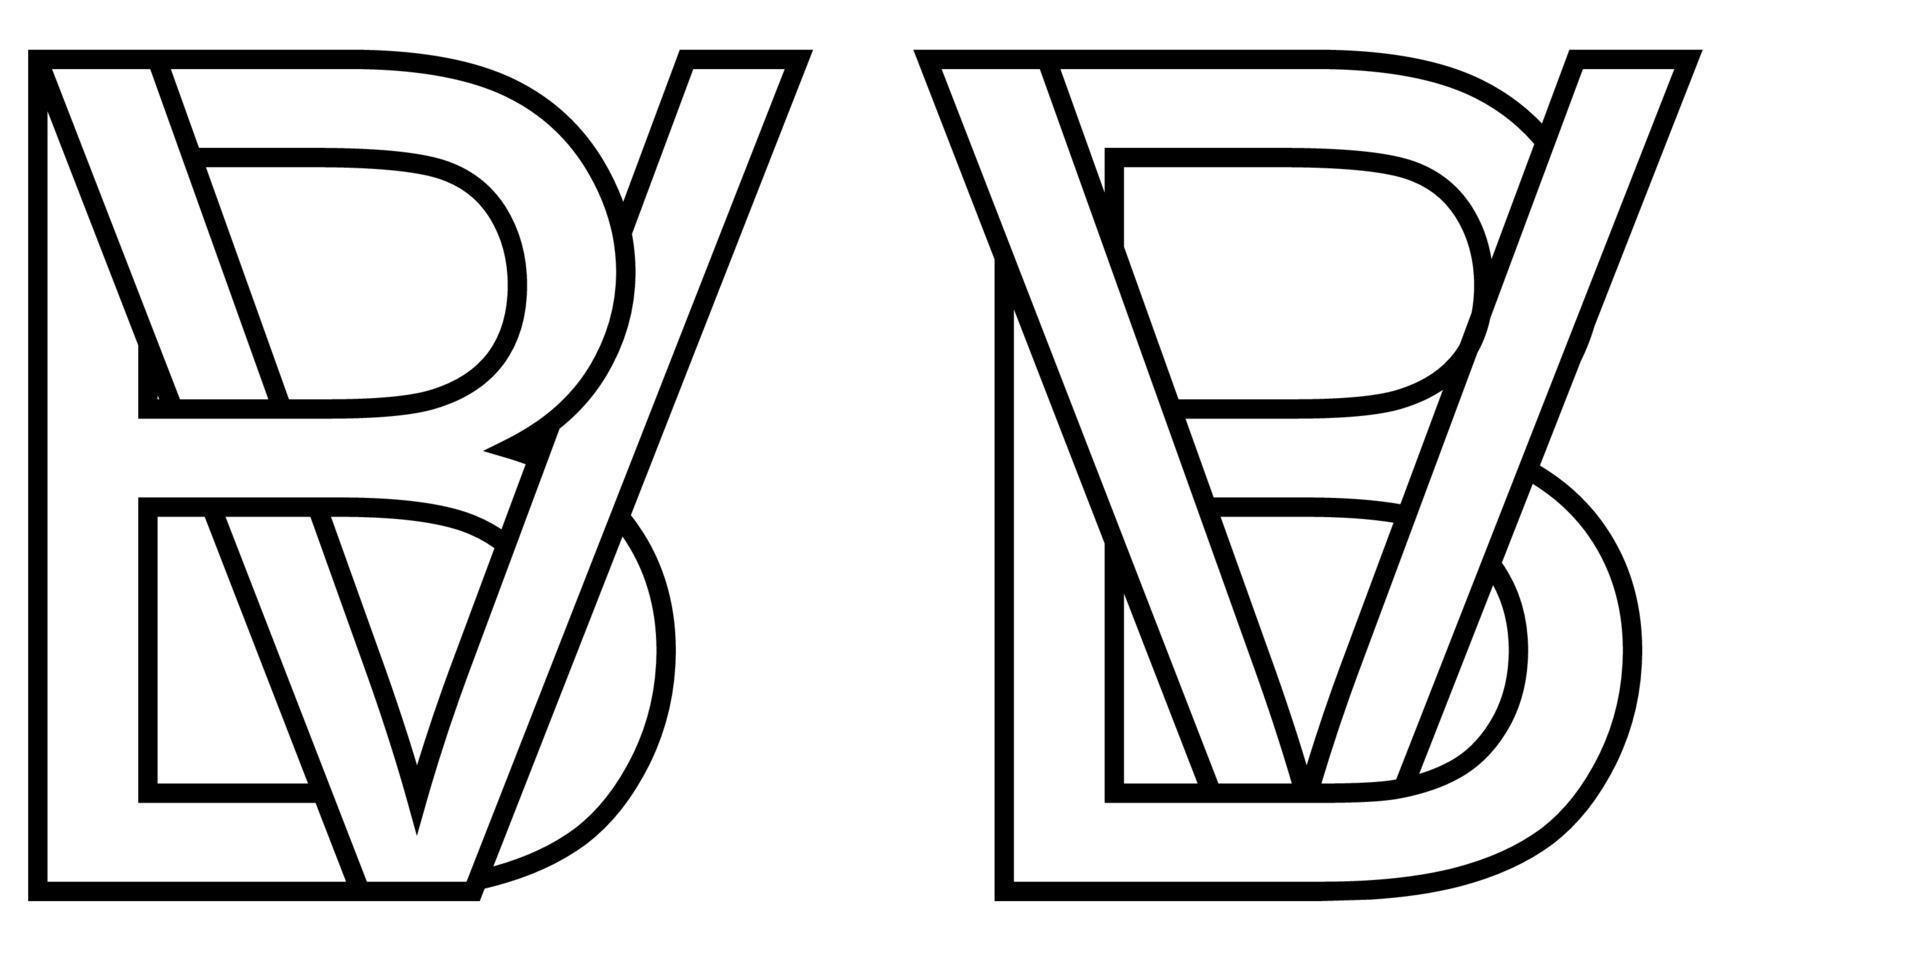 logo firmar bv vb icono firmar dos entrelazado letras b, v vector logo bv, vb primero capital letras modelo alfabeto b, v